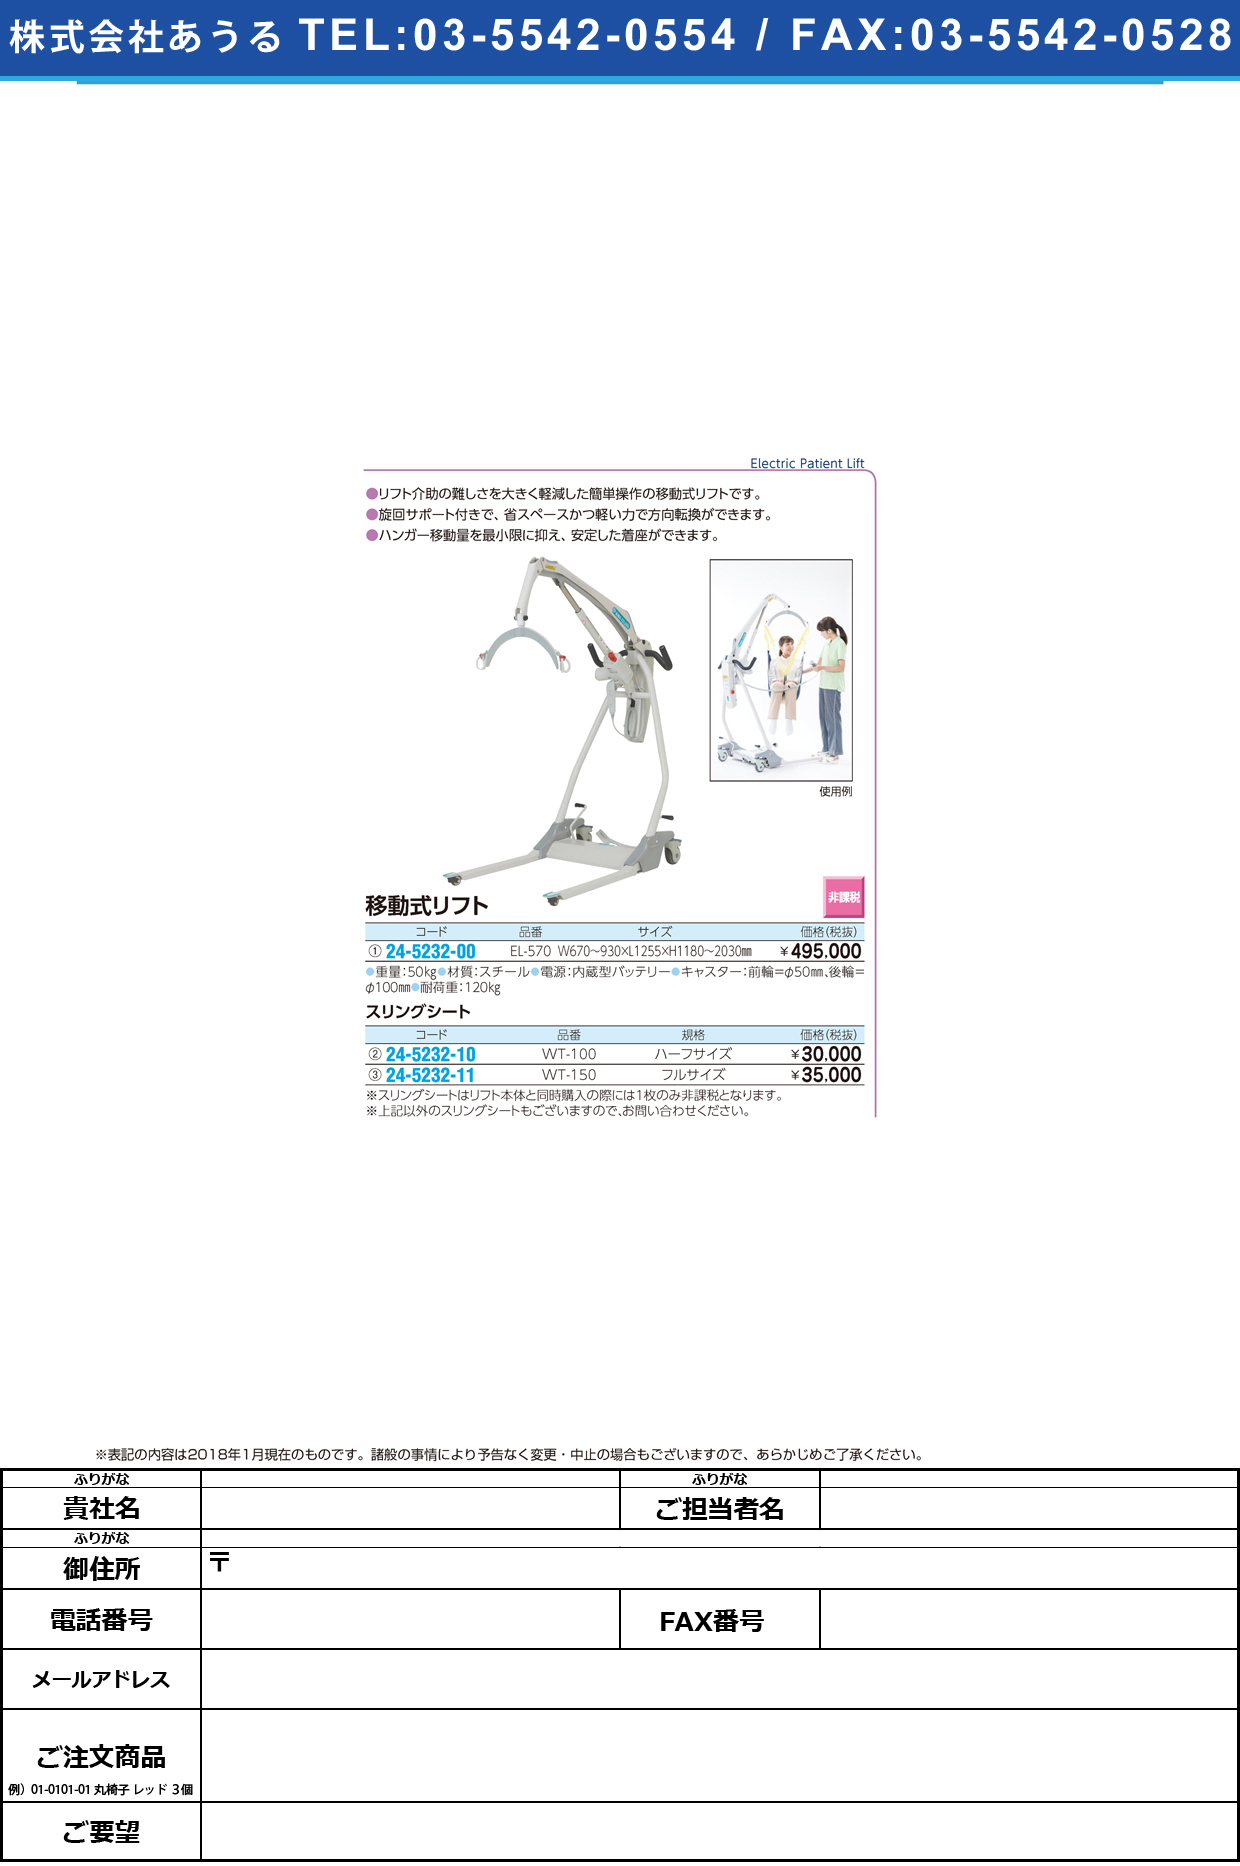 (24-5232-10)スリングシート WT-100(ﾊｰﾌｻｲｽﾞ) ｽﾘﾝｸﾞｼｰﾄ(いうら)【1枚単位】【2018年カタログ商品】